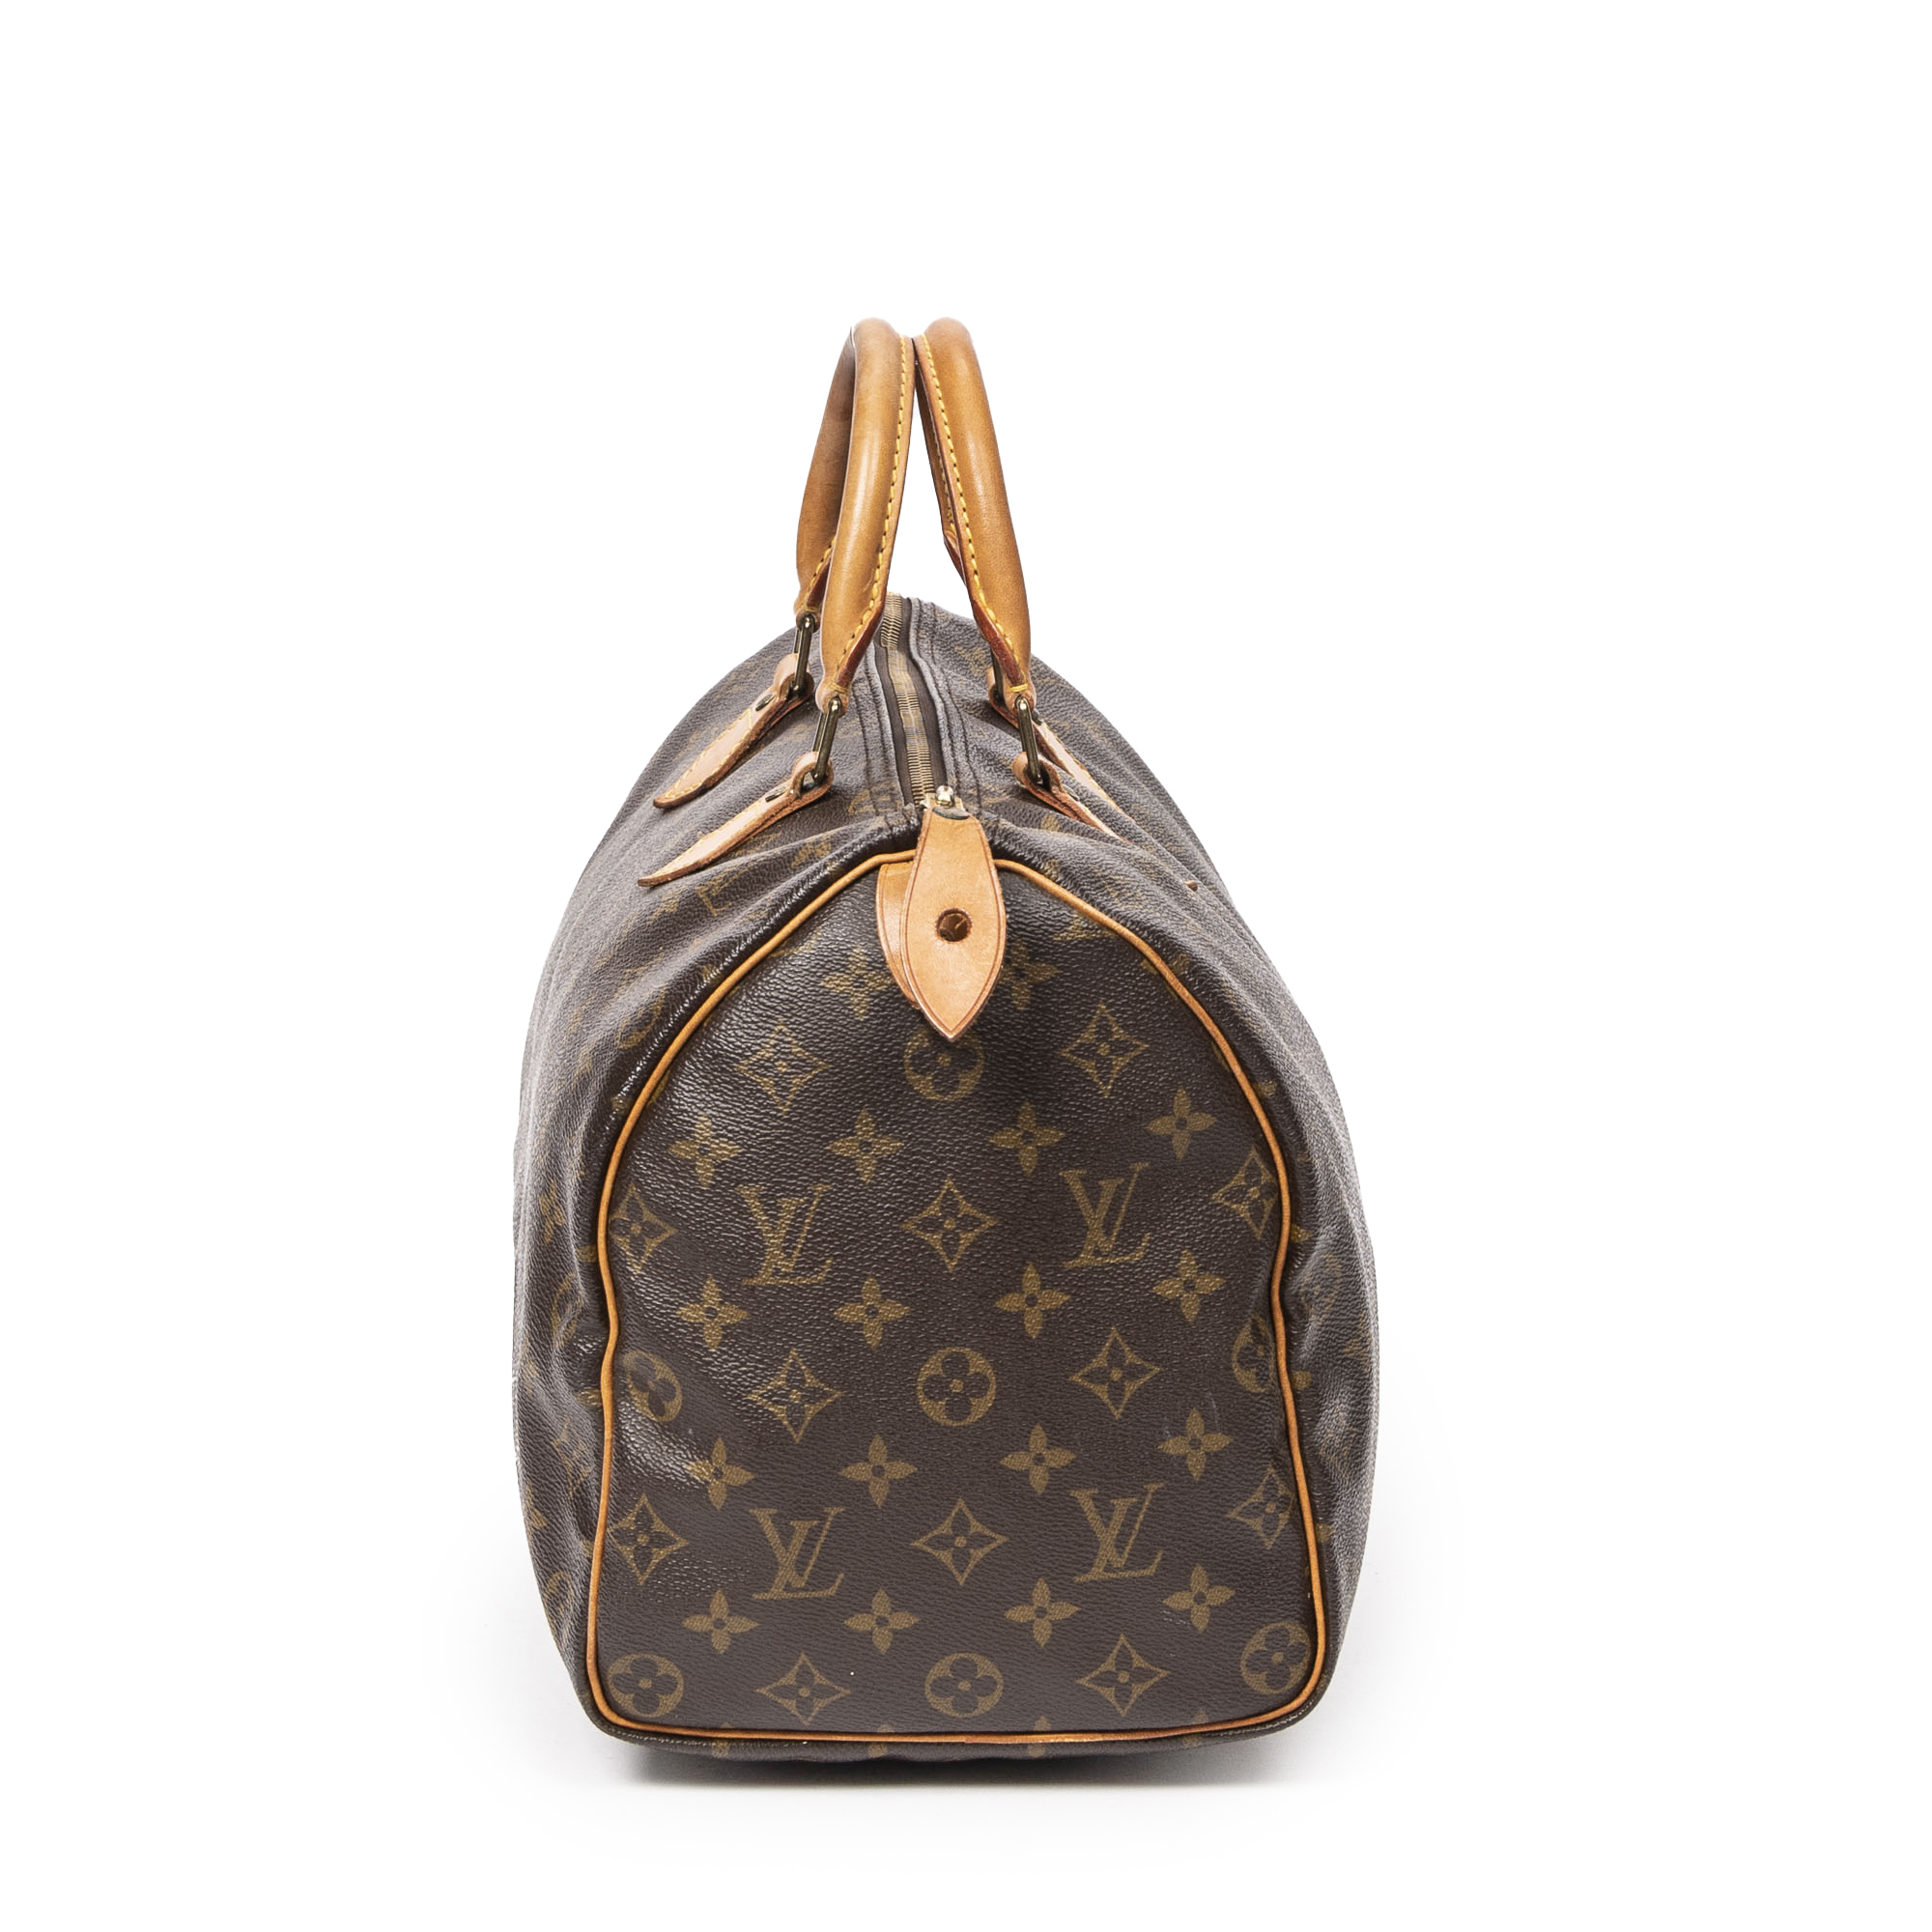 Louis Vuitton Speedy Speedy bandouli√ Re 35, Brown, One Size